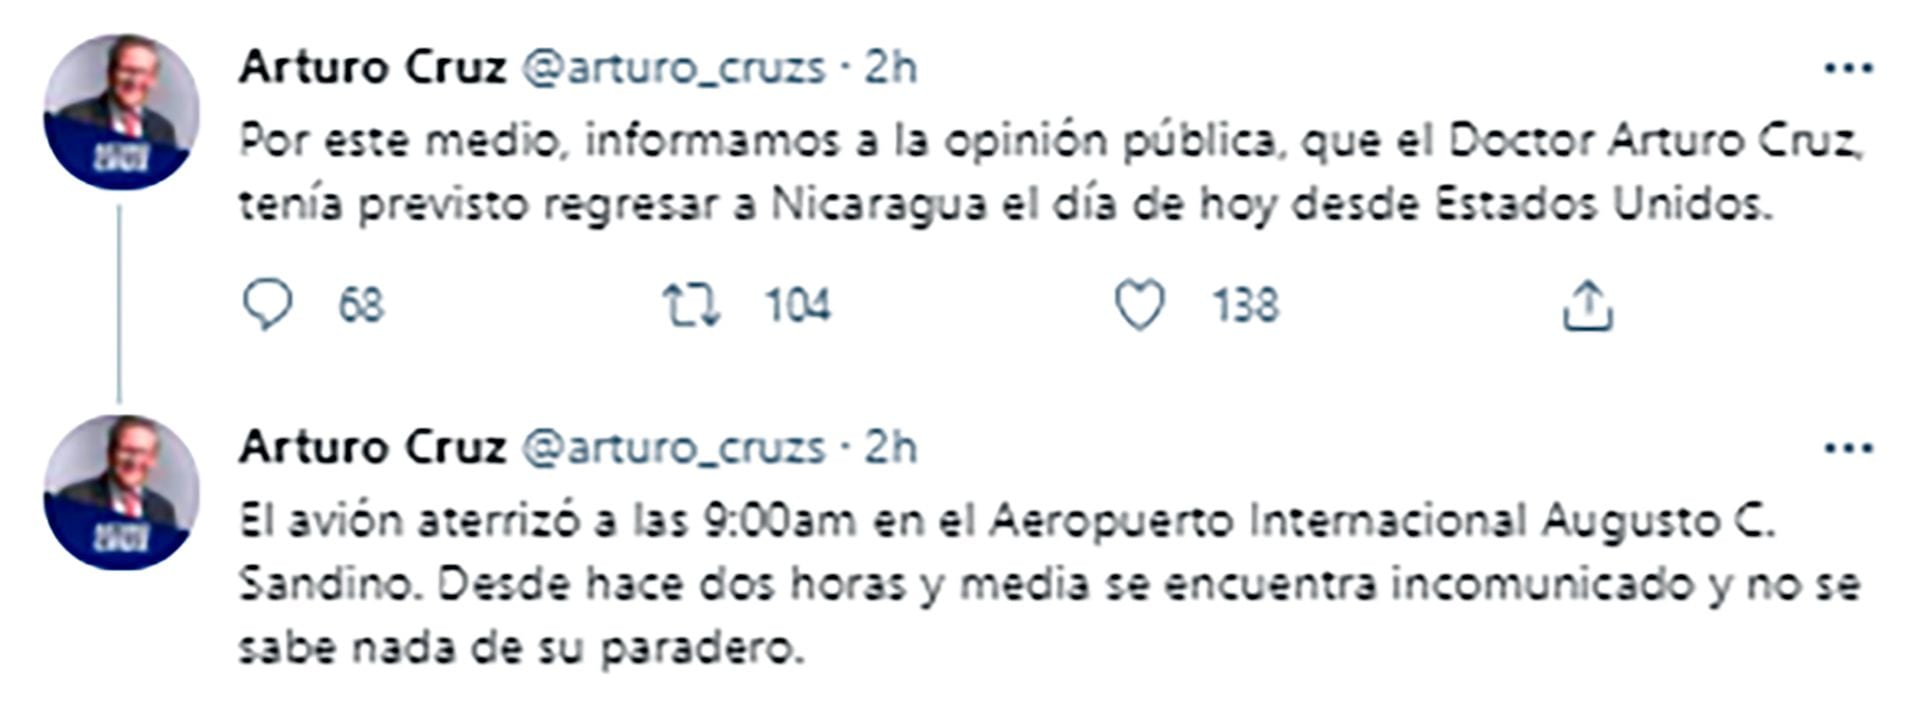 Los tuits del equipo de Arturo Cruz, ante su desaparición en el aeropuerto